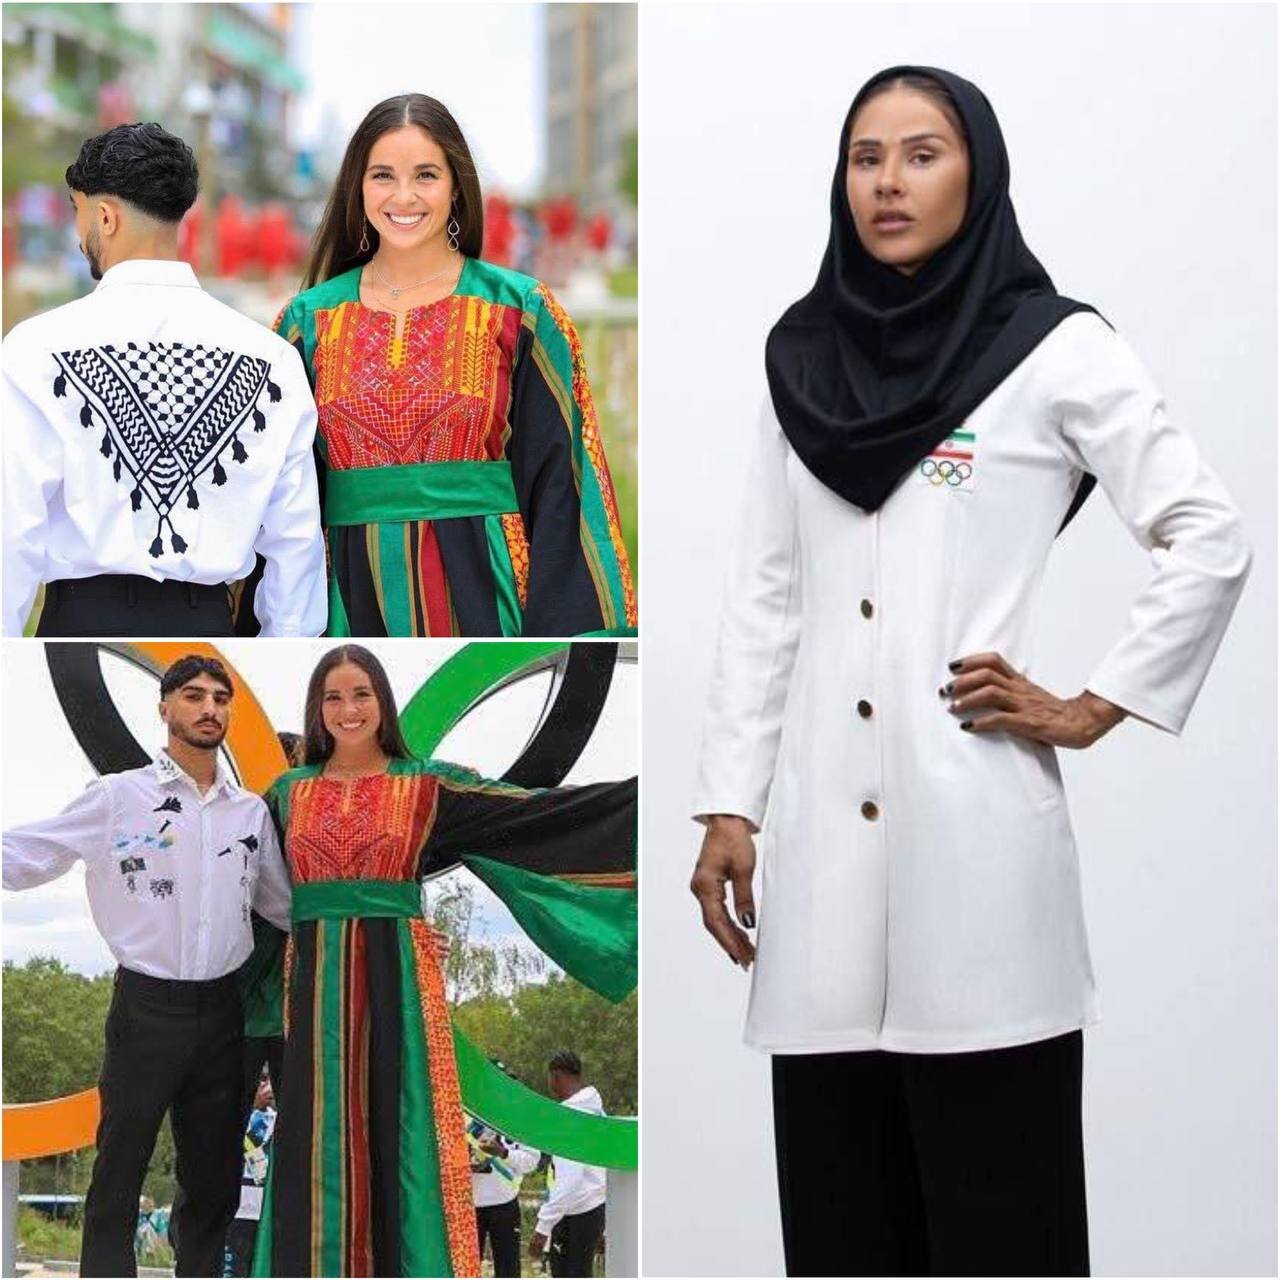 عکس | قابل توجه مسئولان کشور؛ مقایسه لباس کاروان فلسطین و ایران در المپیک پاریس